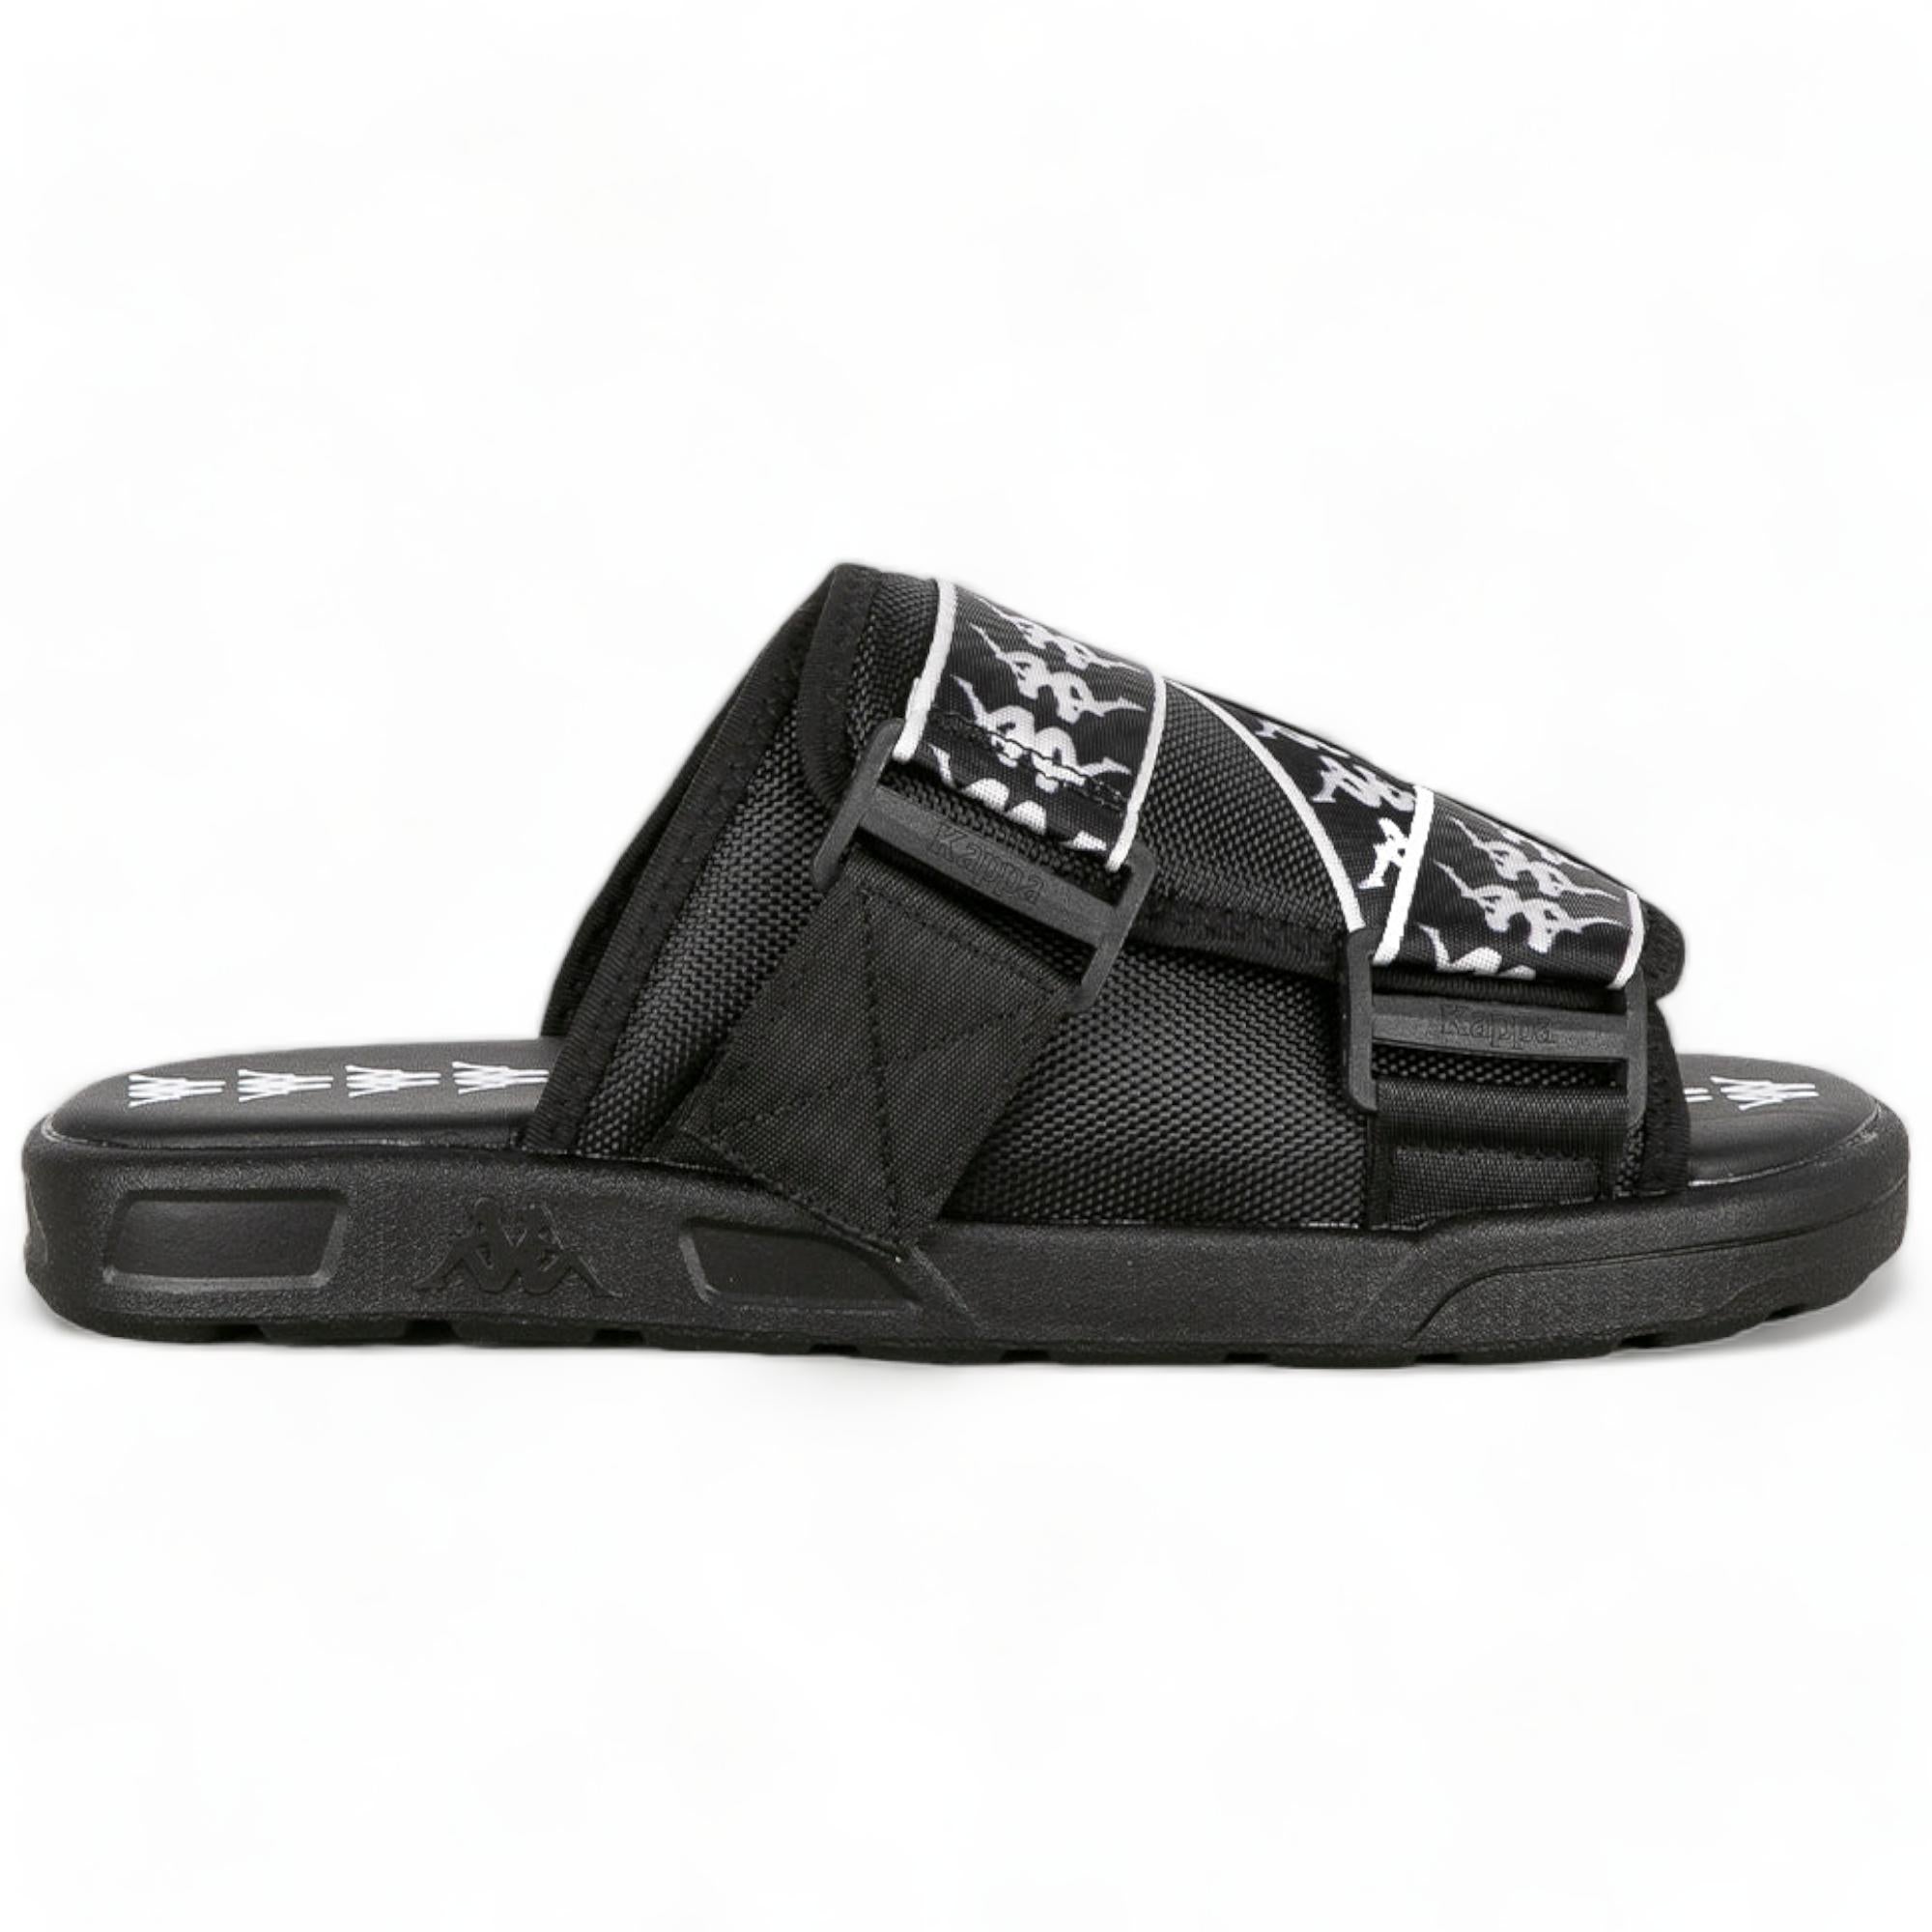 KAPPA 222 BANDA 1 SANDALS SLIDES - BLACK WHITE BLACK-Men-Footwear-Sandals & Slides-Kappa- Nexus Clothing